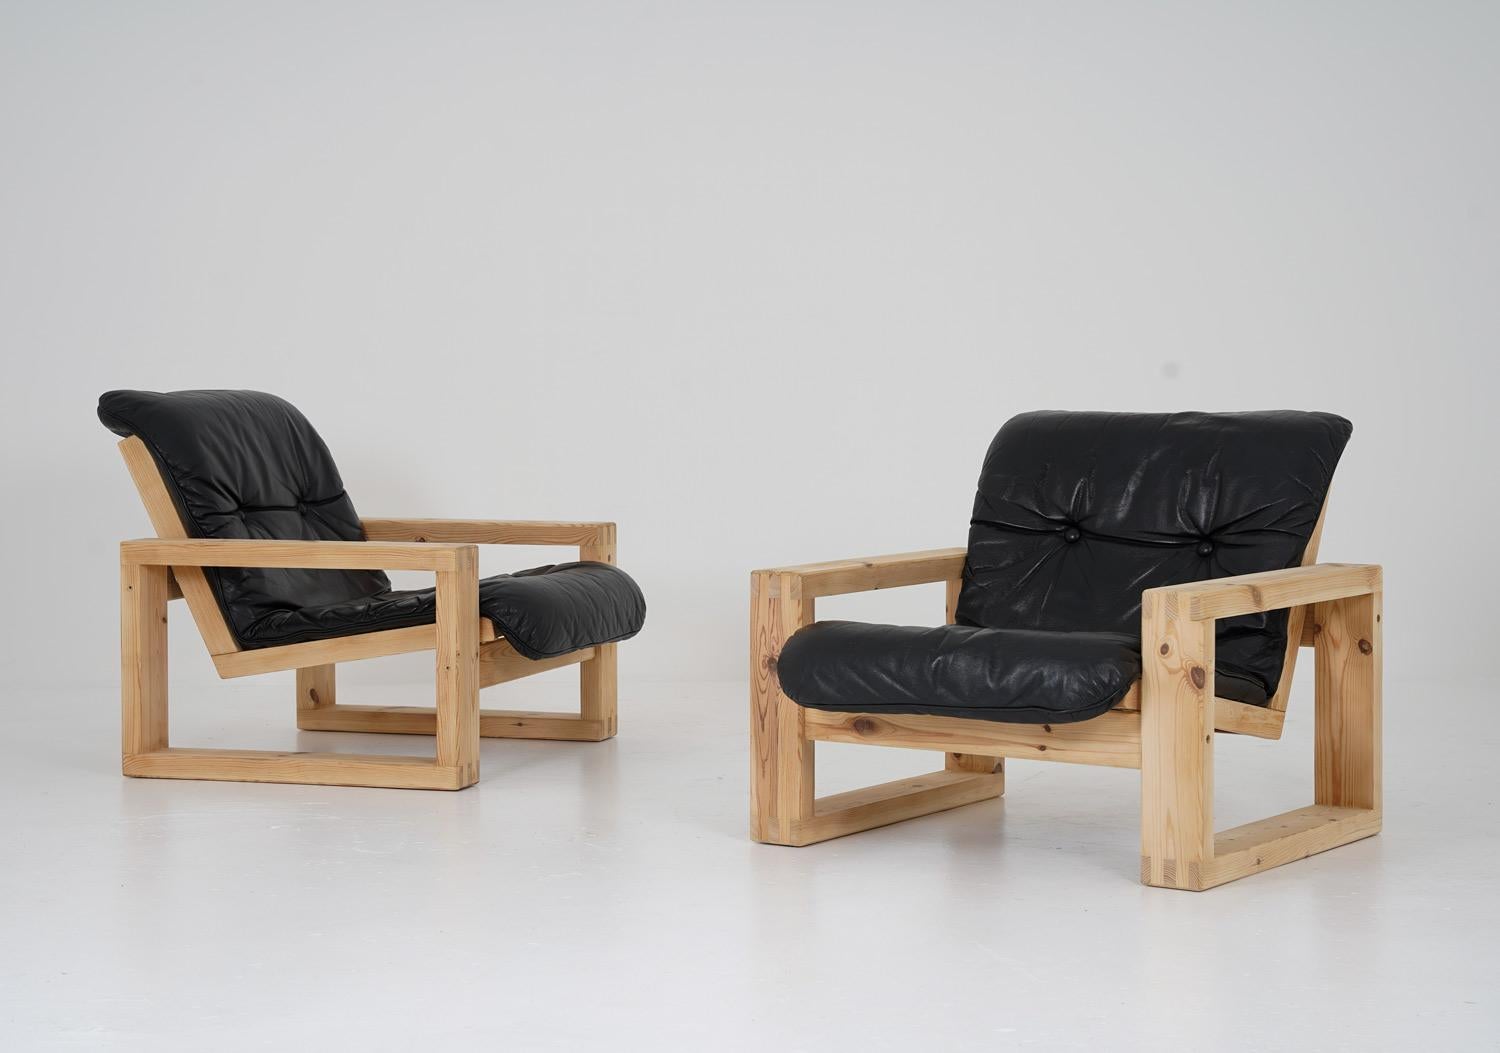 Ein Paar seltene Loungesessel von Yngve Ekström für Swedese, um 1970.
Dieses Modell ist ein großartiges Beispiel für die Ära der robusten Kiefernmöbel, die Ende der 1960er Jahre in Schweden populär wurden. Die Stühle sind aus dickem, massivem